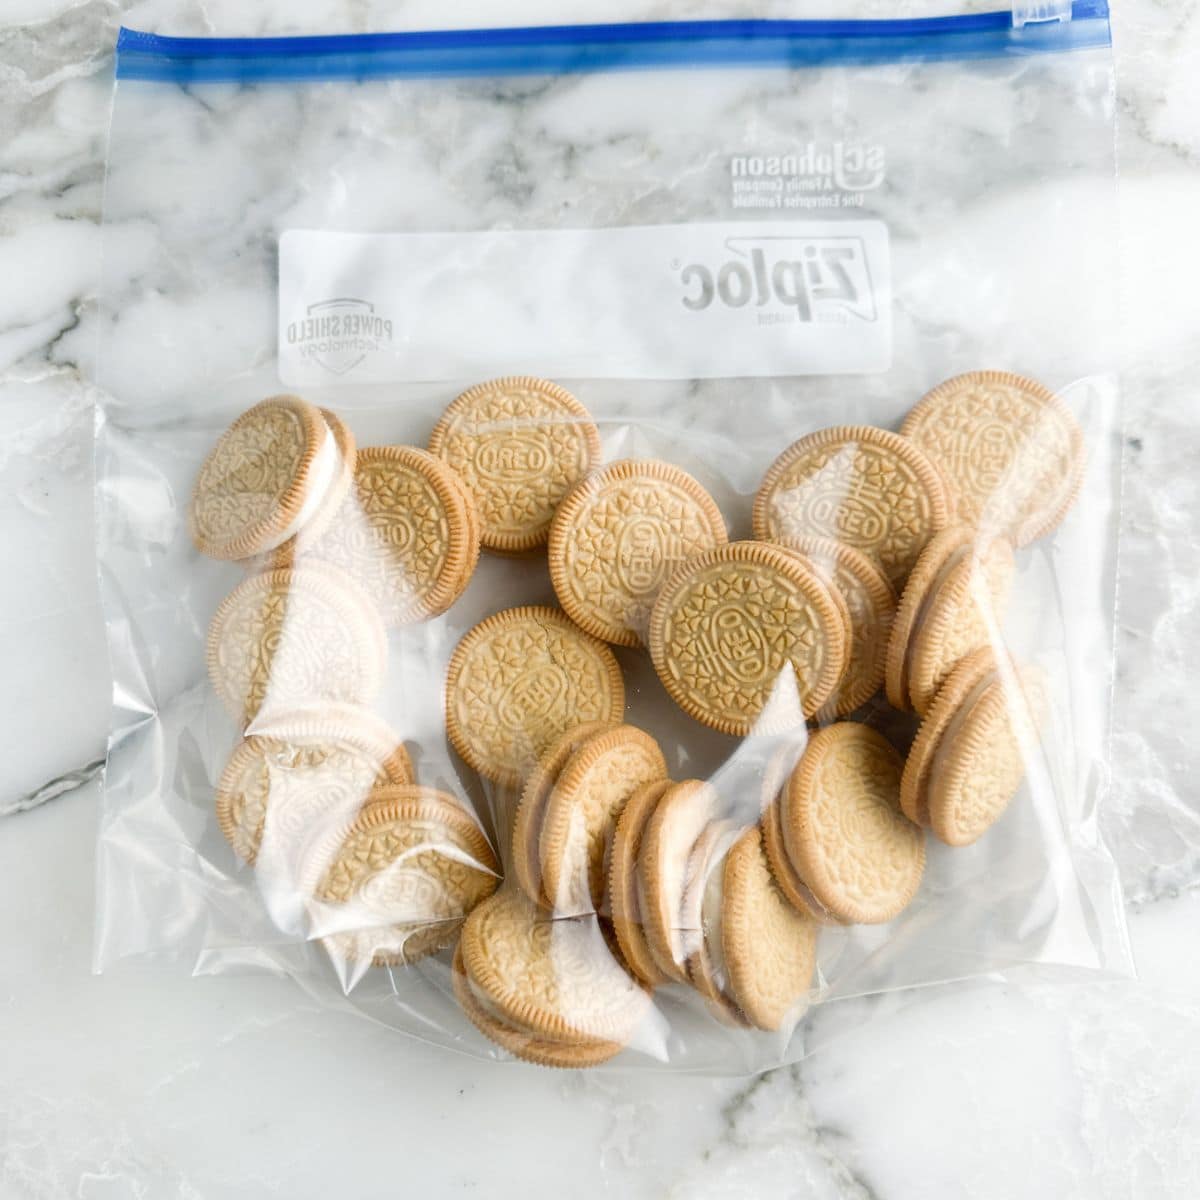 Zip top bag filled with Golden Oreo cookies. 